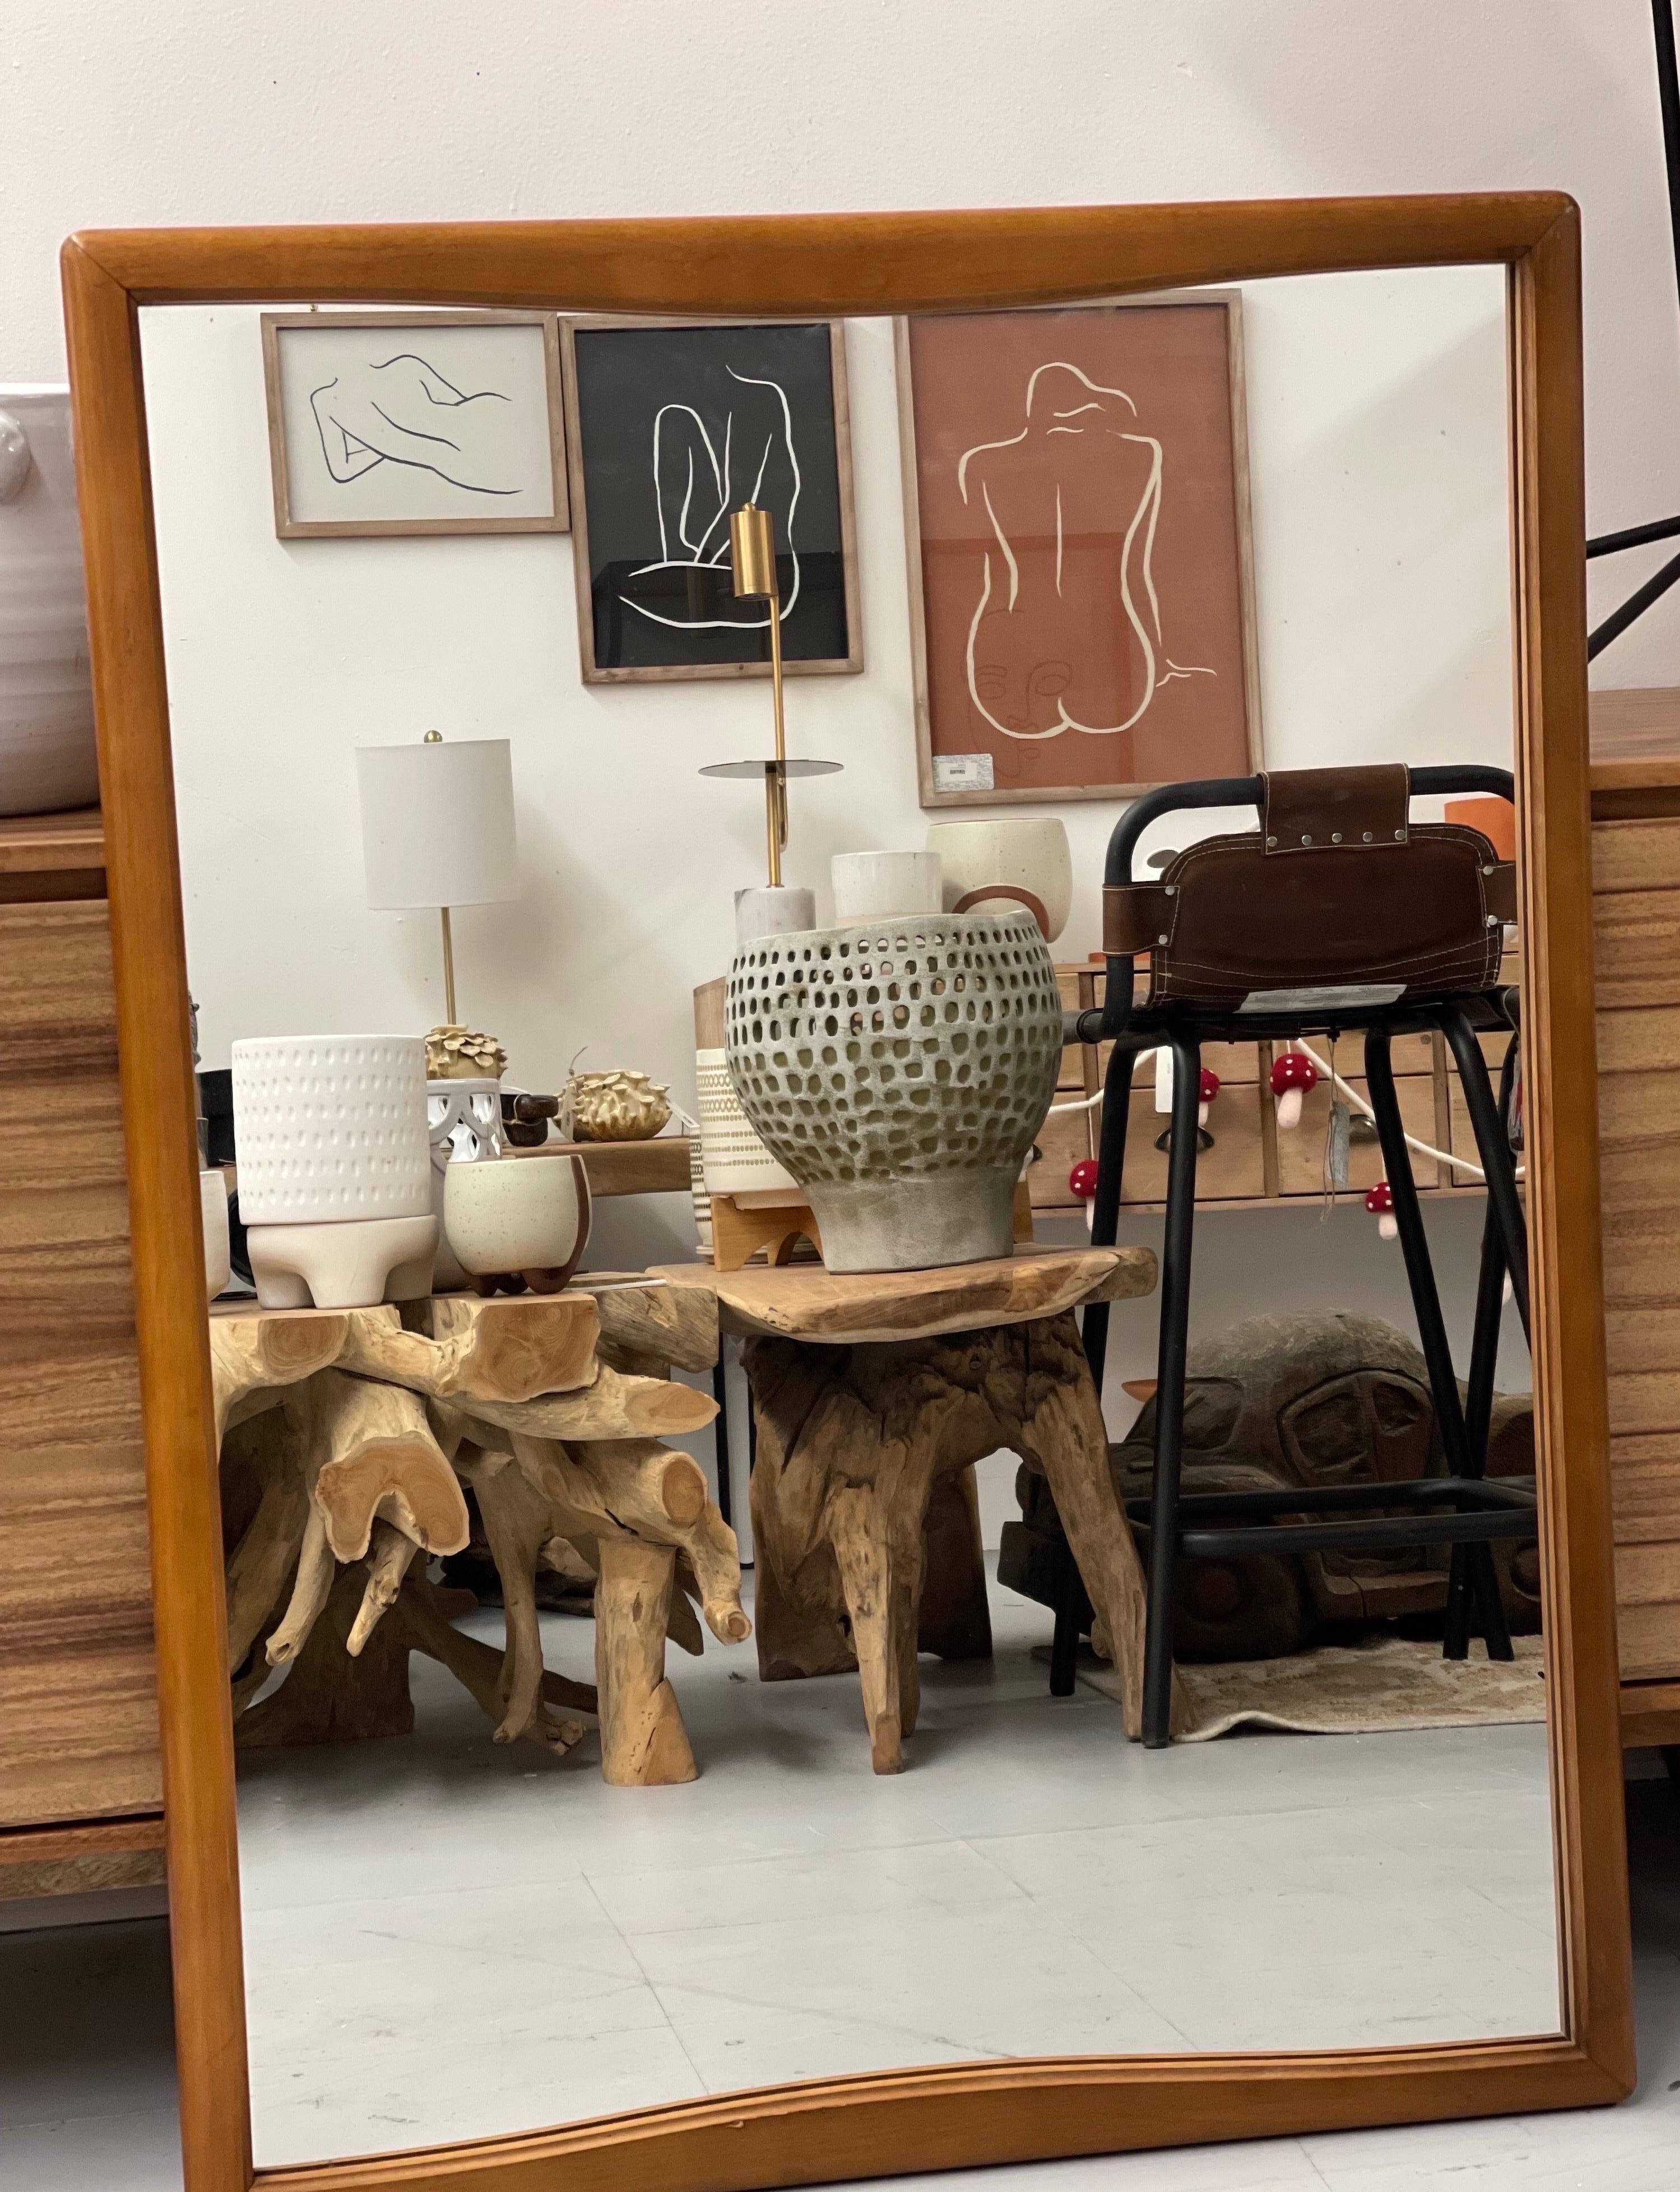 Miroir encadré en bois de style moderne du milieu du siècle.

Dimensions. 32 W ; 42 H.